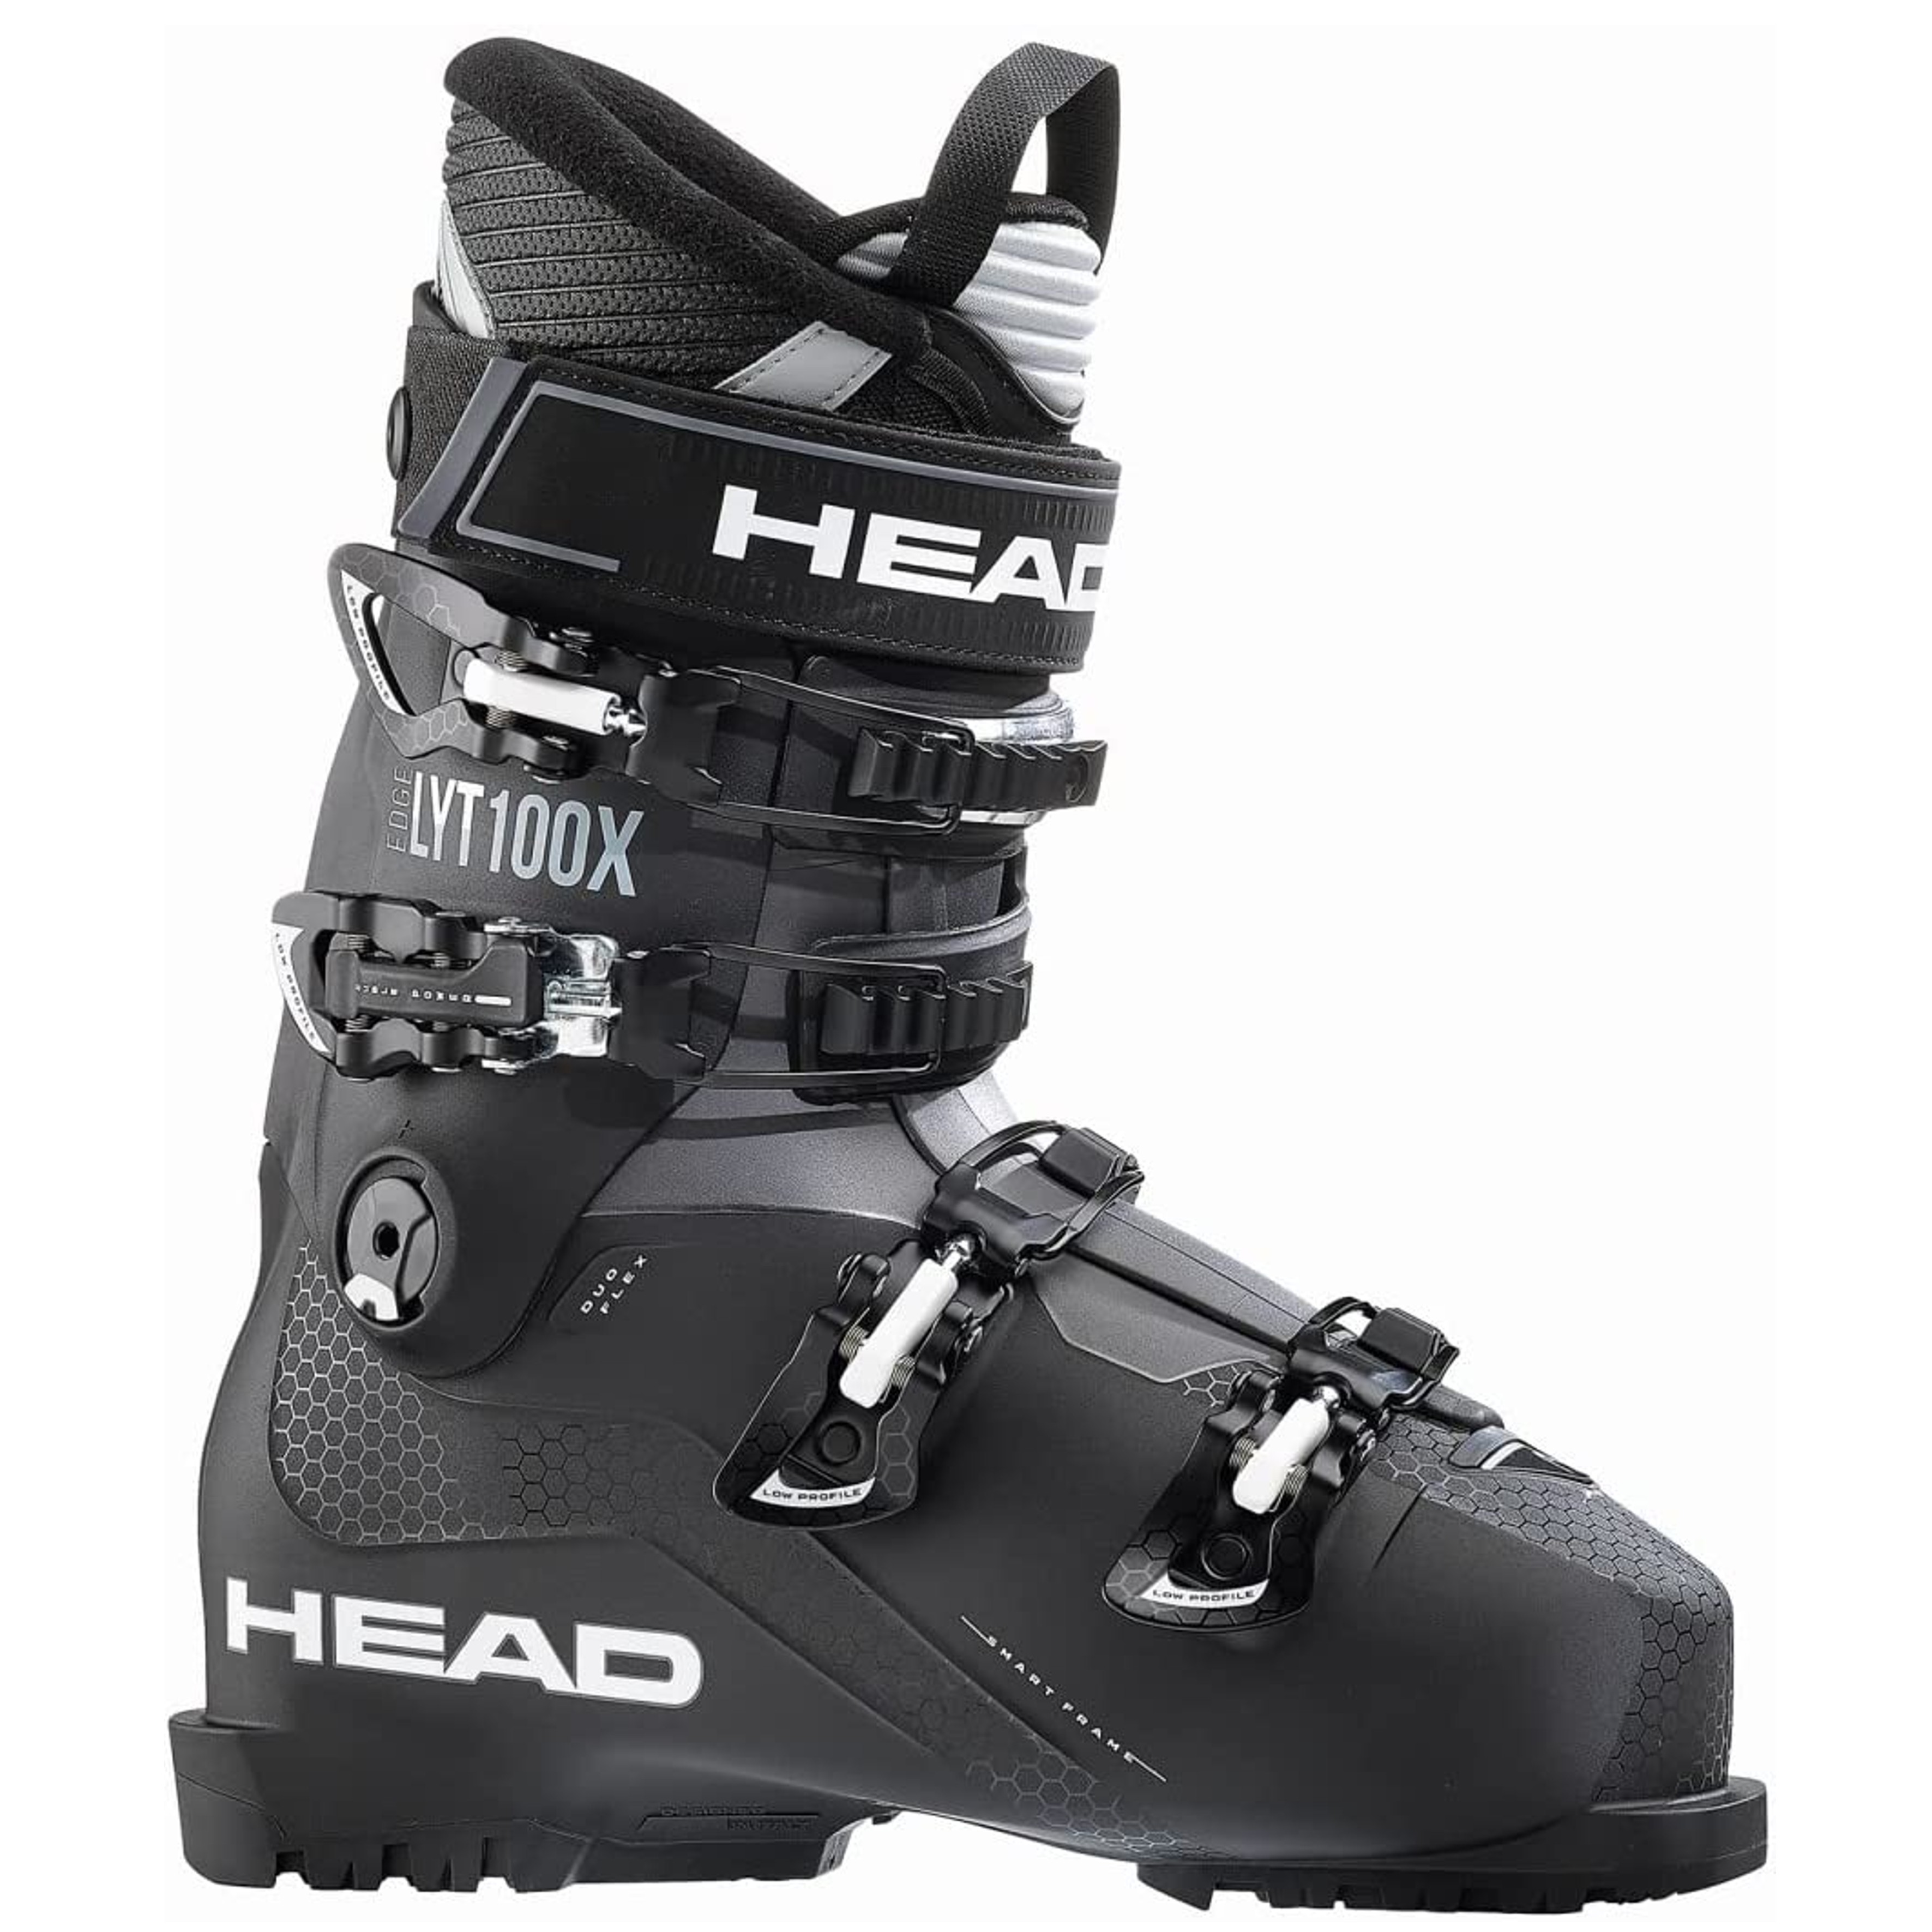 HEAD EDGE LYT 100 X GW BLACK - Skischuhe für Herren - 1 Paar